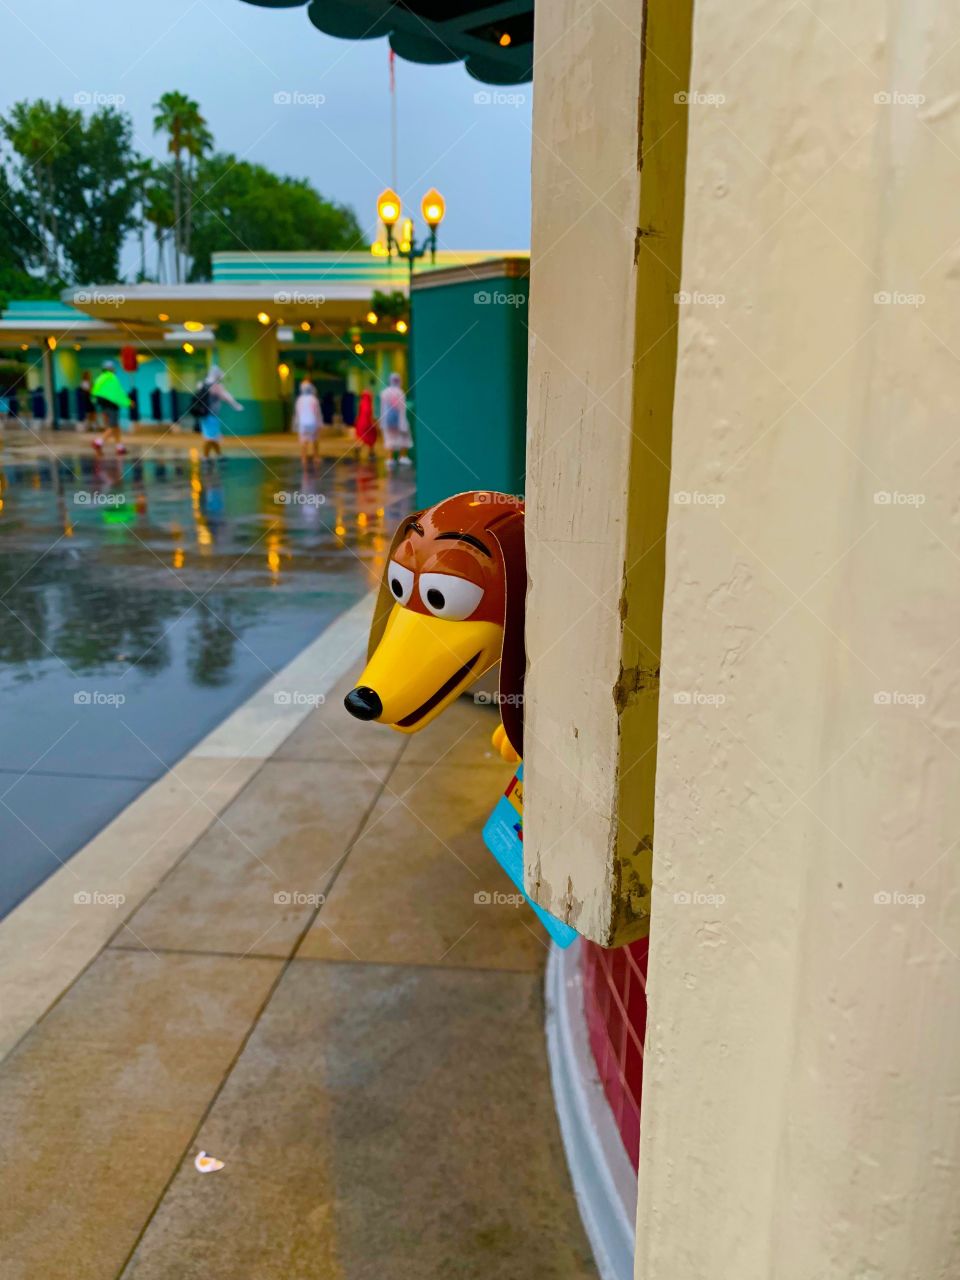 Slinky Dog August 1, 2019 #DisneyDaily 